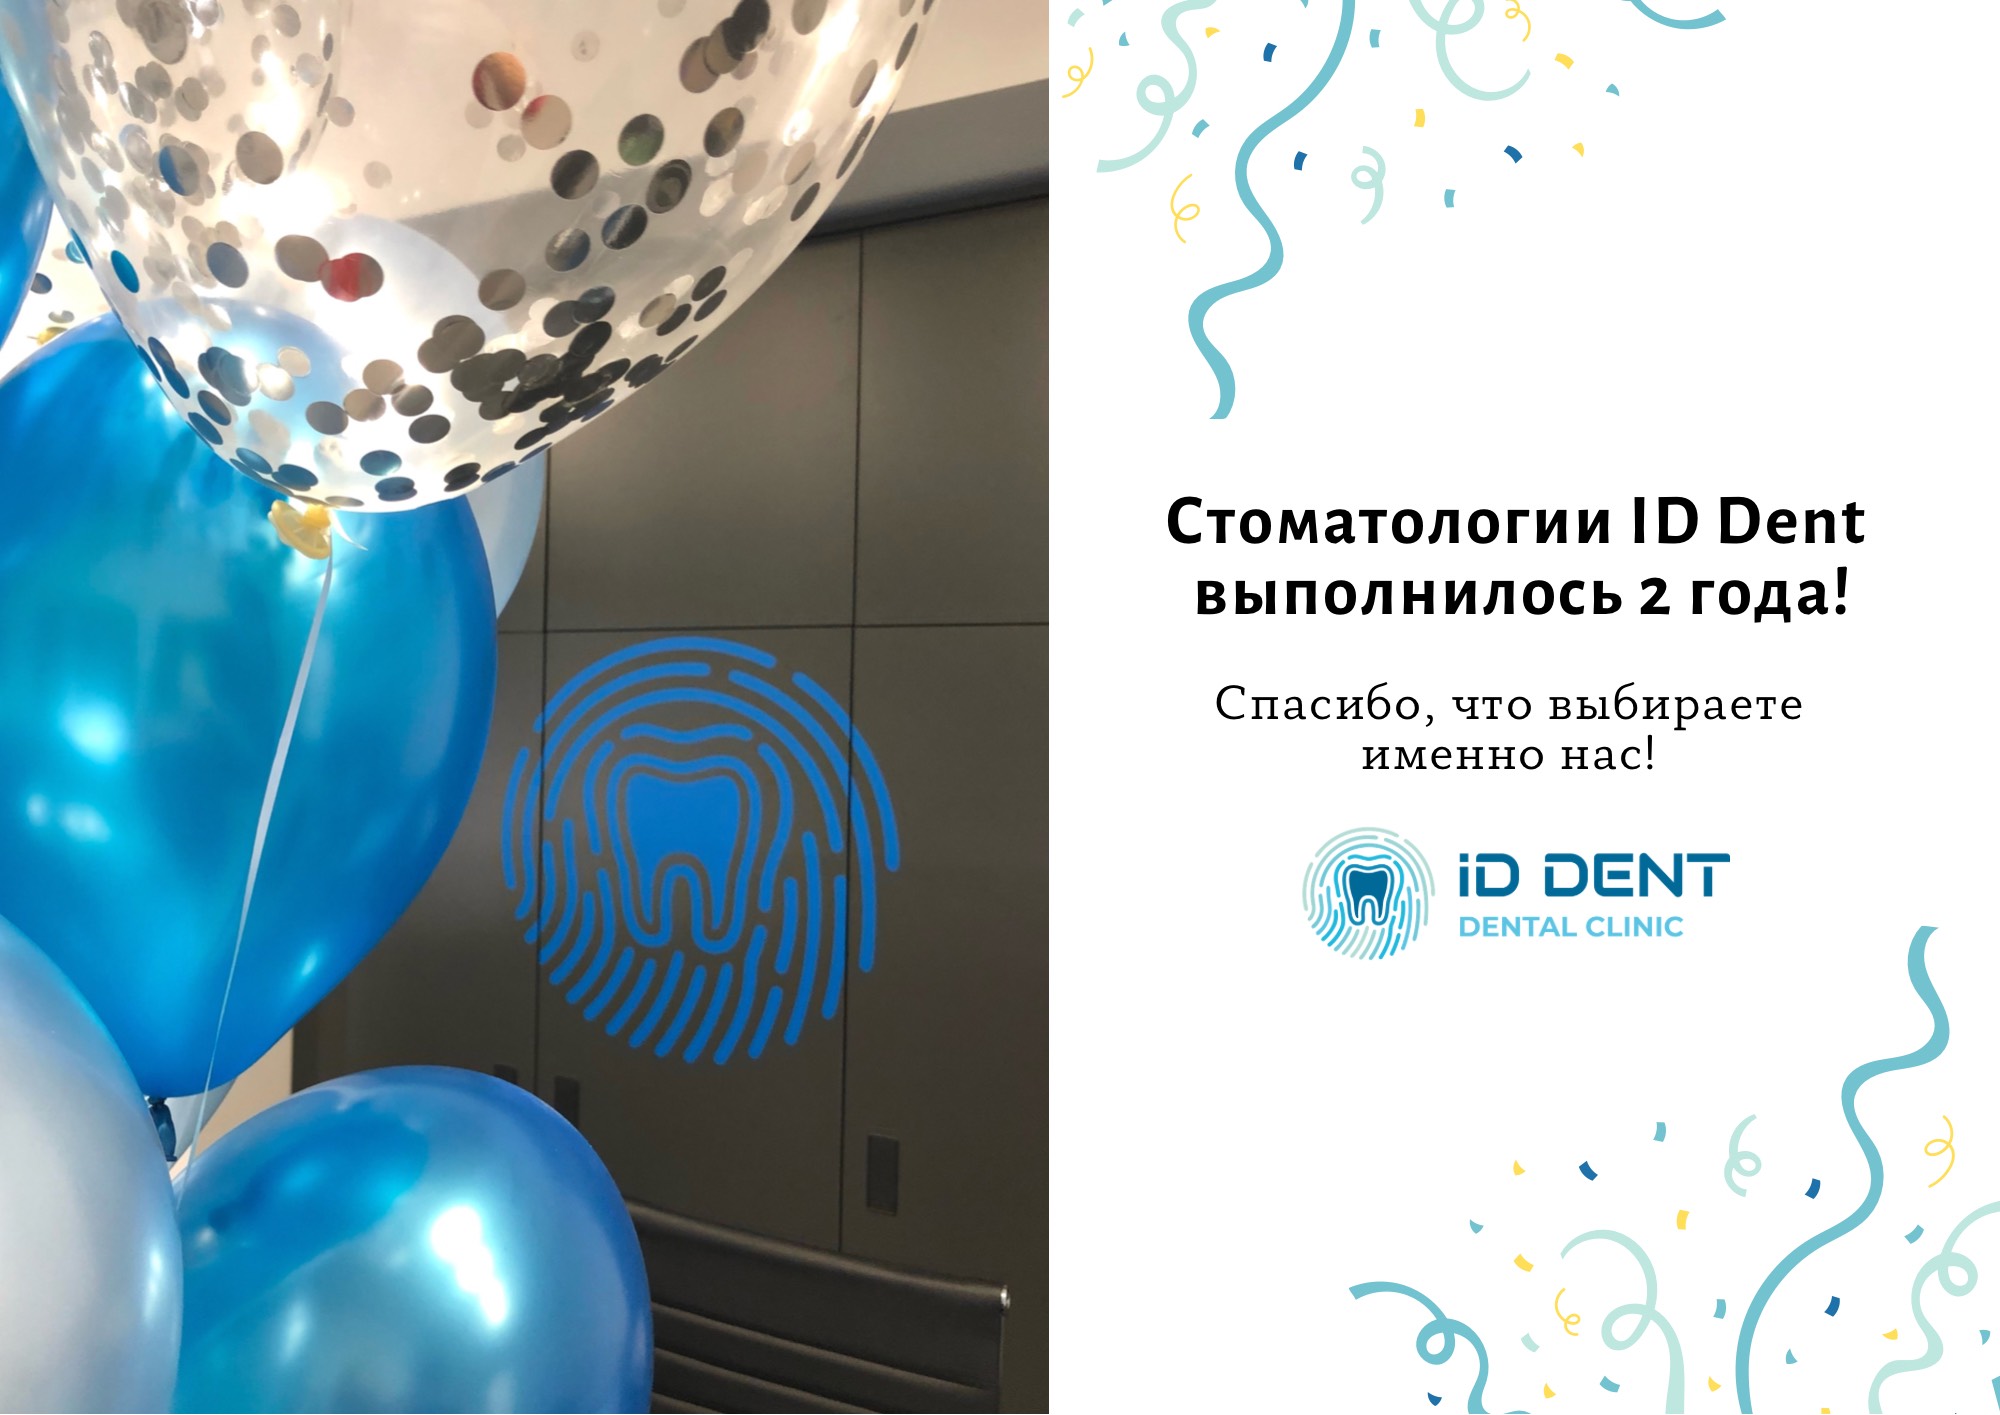 Стоматологии ID Dent выполнилось 2 года!